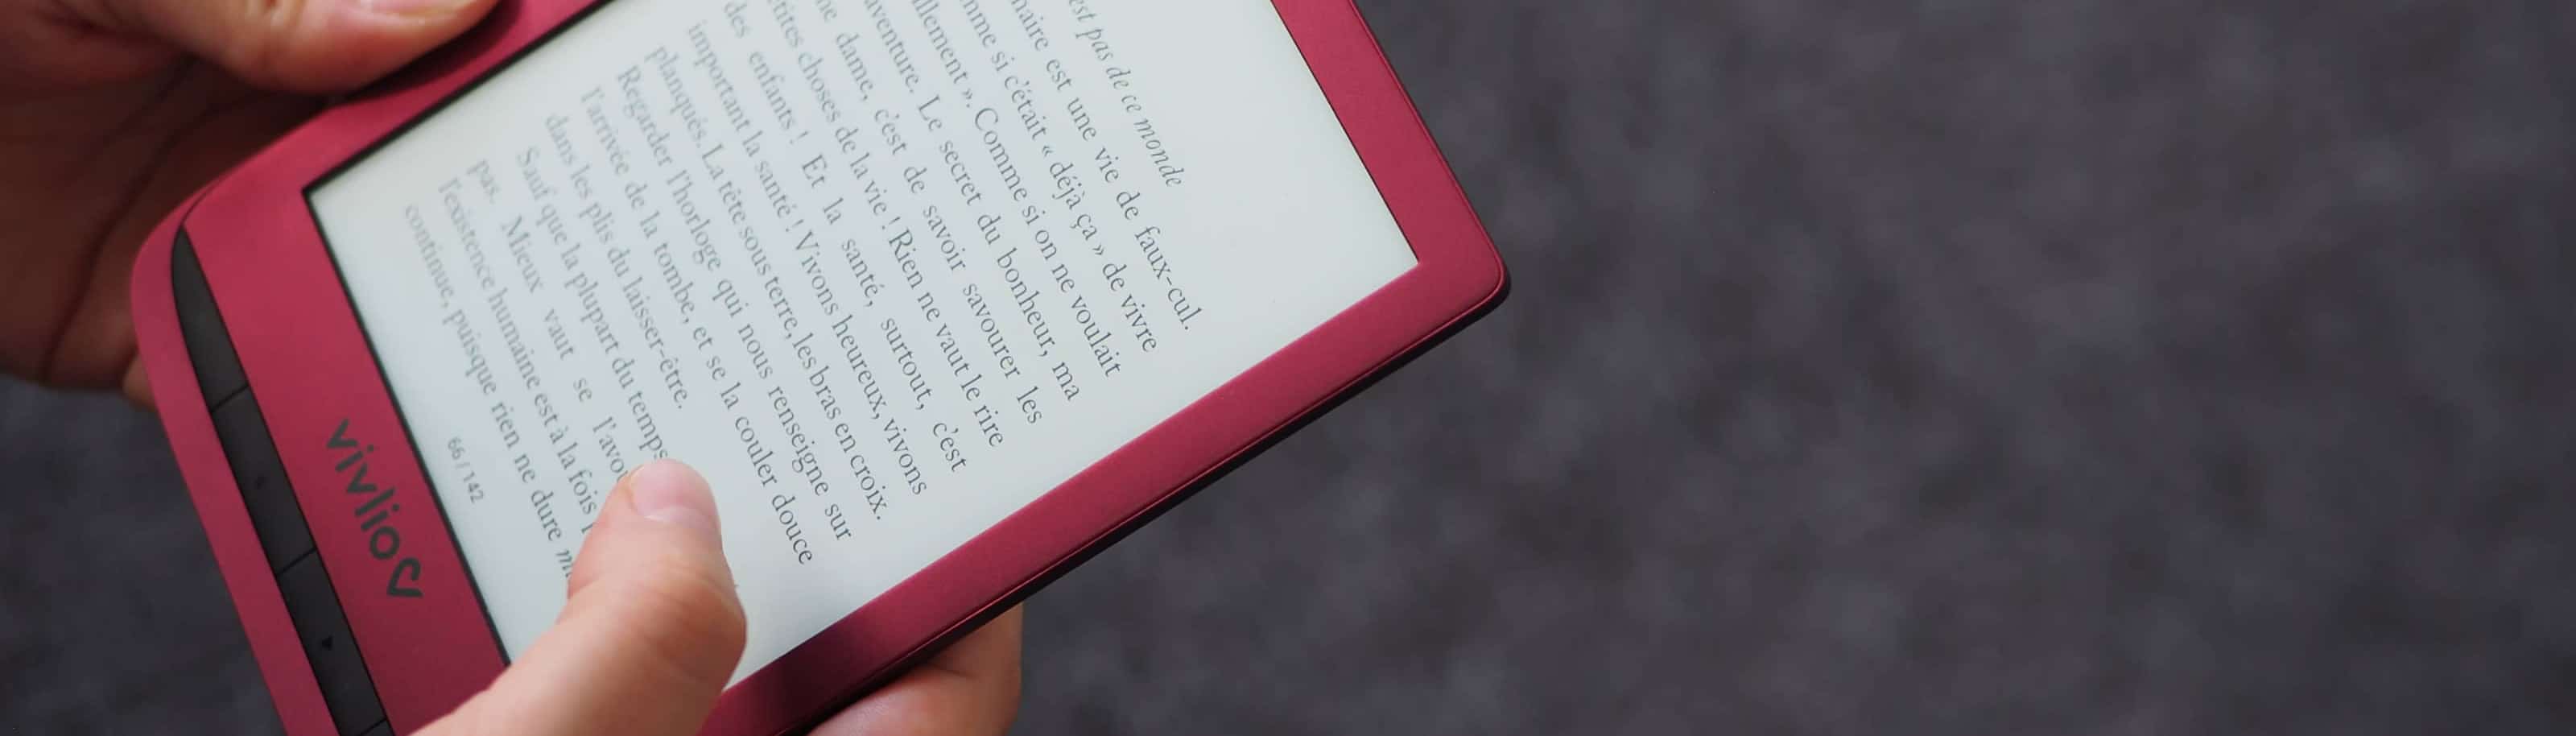 La liseuse française Vivlio Touch Lux 5 peut-elle contrer  et ses  liseuses Kindle?